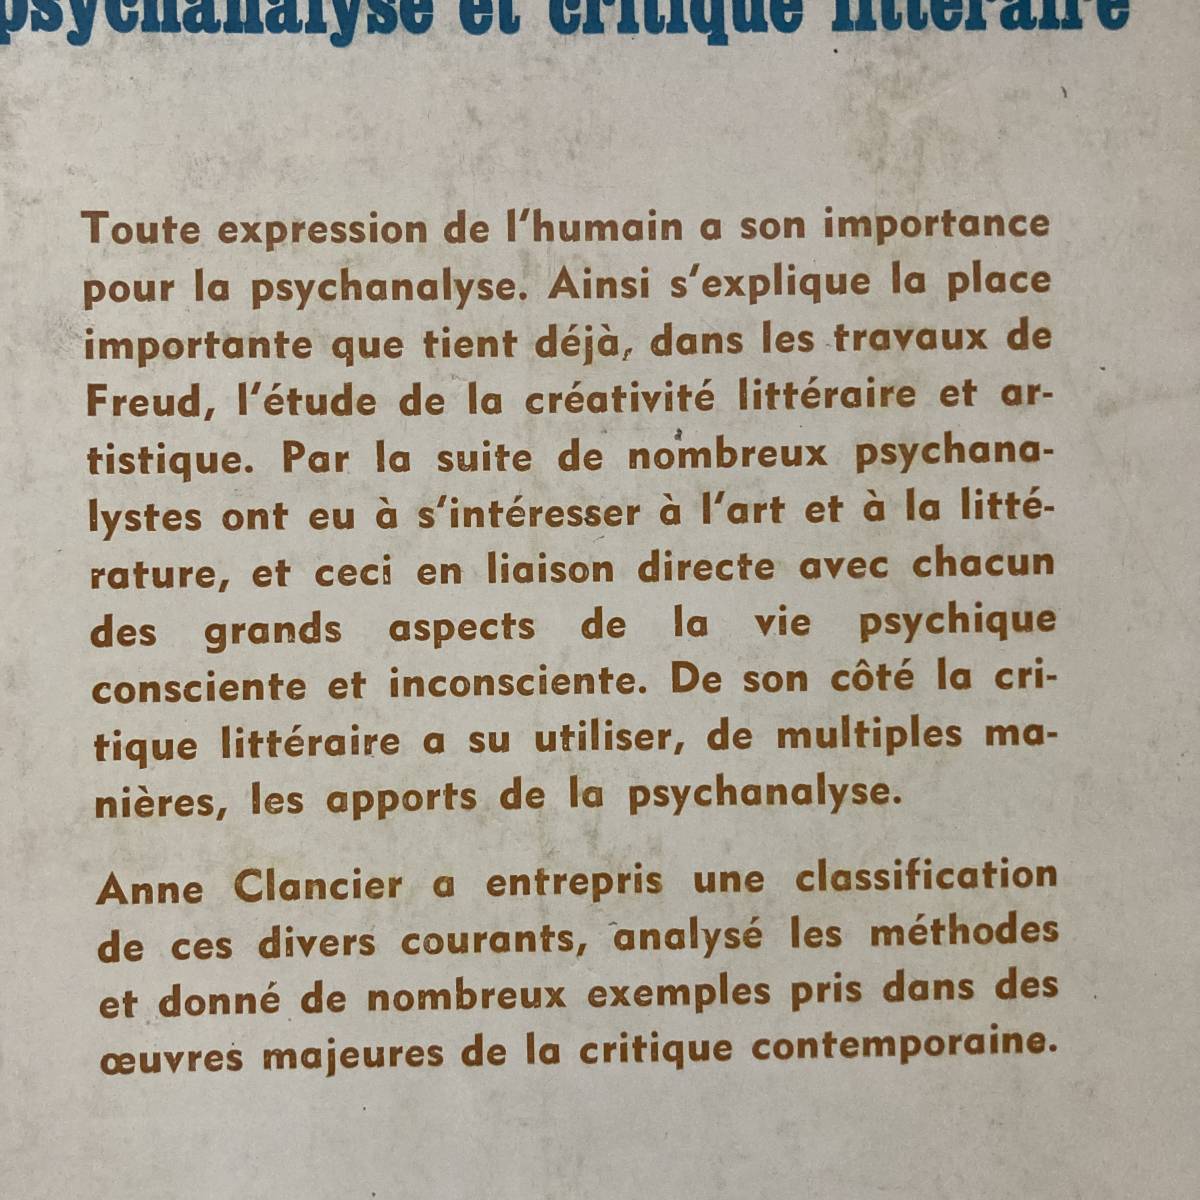 【仏語洋書】精神分析と文学批評 PSYCHANALYSE ET CRITIQUE LITTERAIRE / Anne Clancier（著）イヴォン・ベラヴァル（序）_画像2